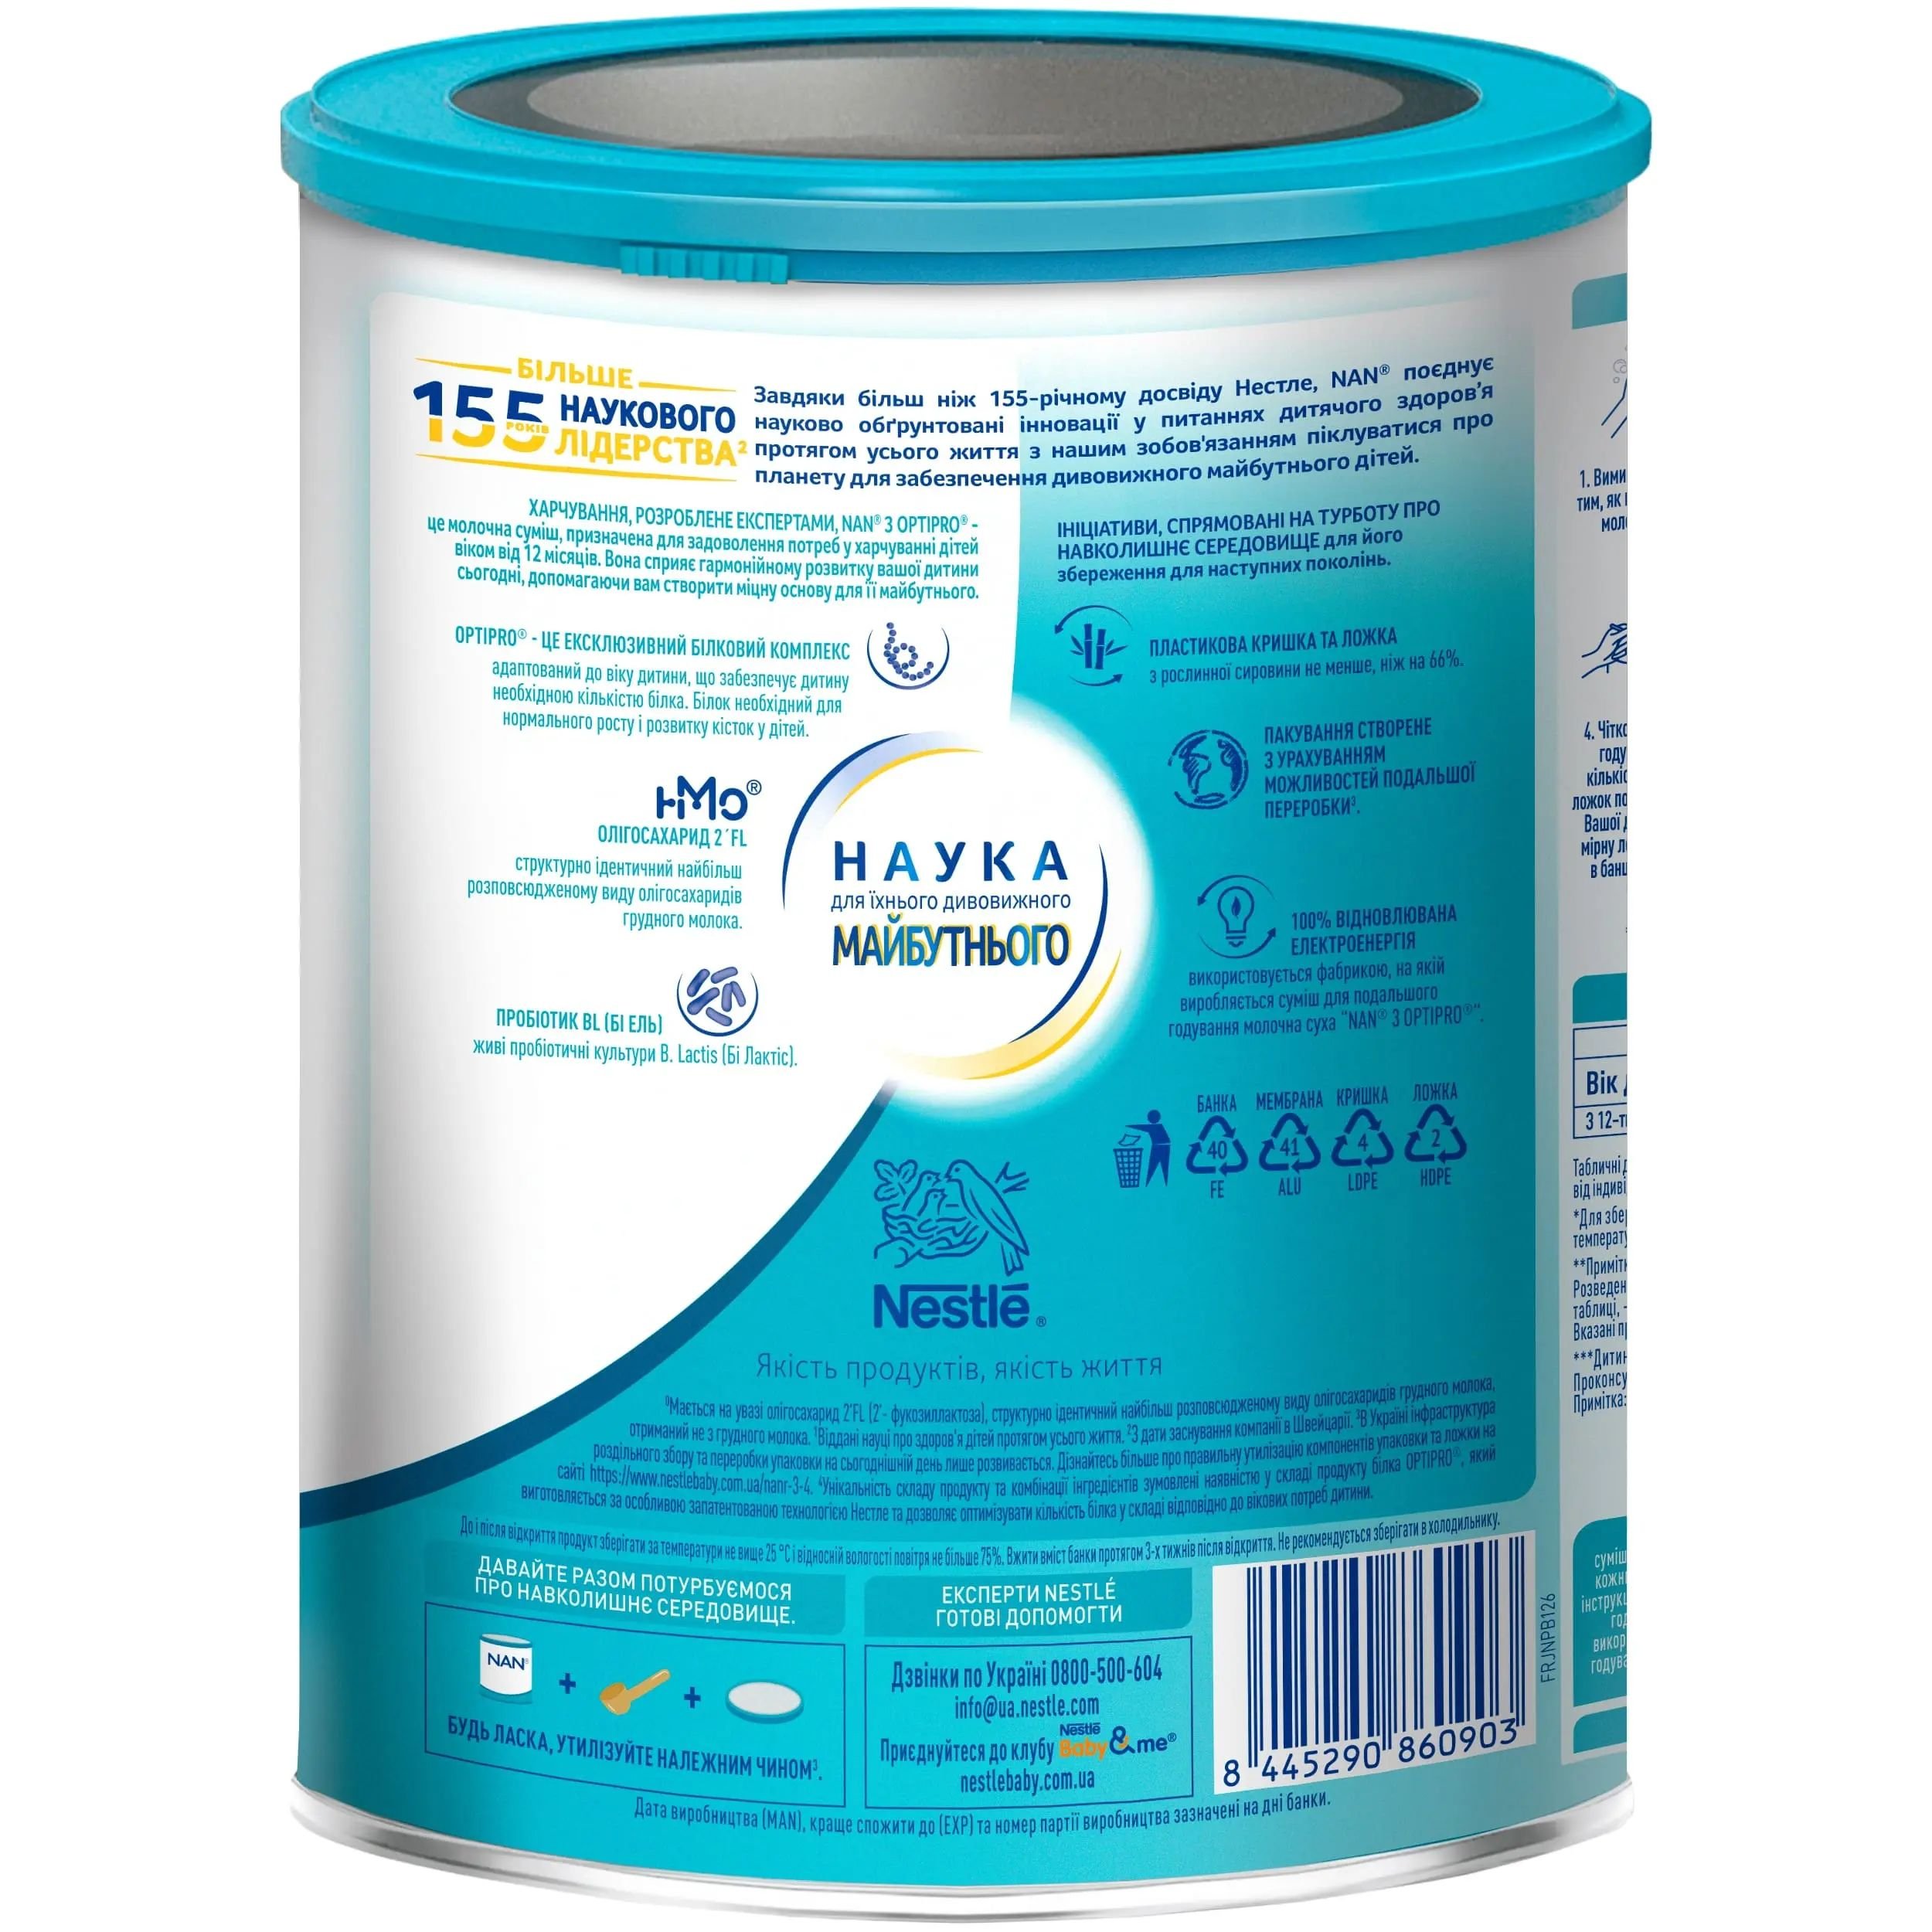 Суха молочна суміш NAN Optipro 3, 1.6 кг (2 шт. по 800 г) - фото 3